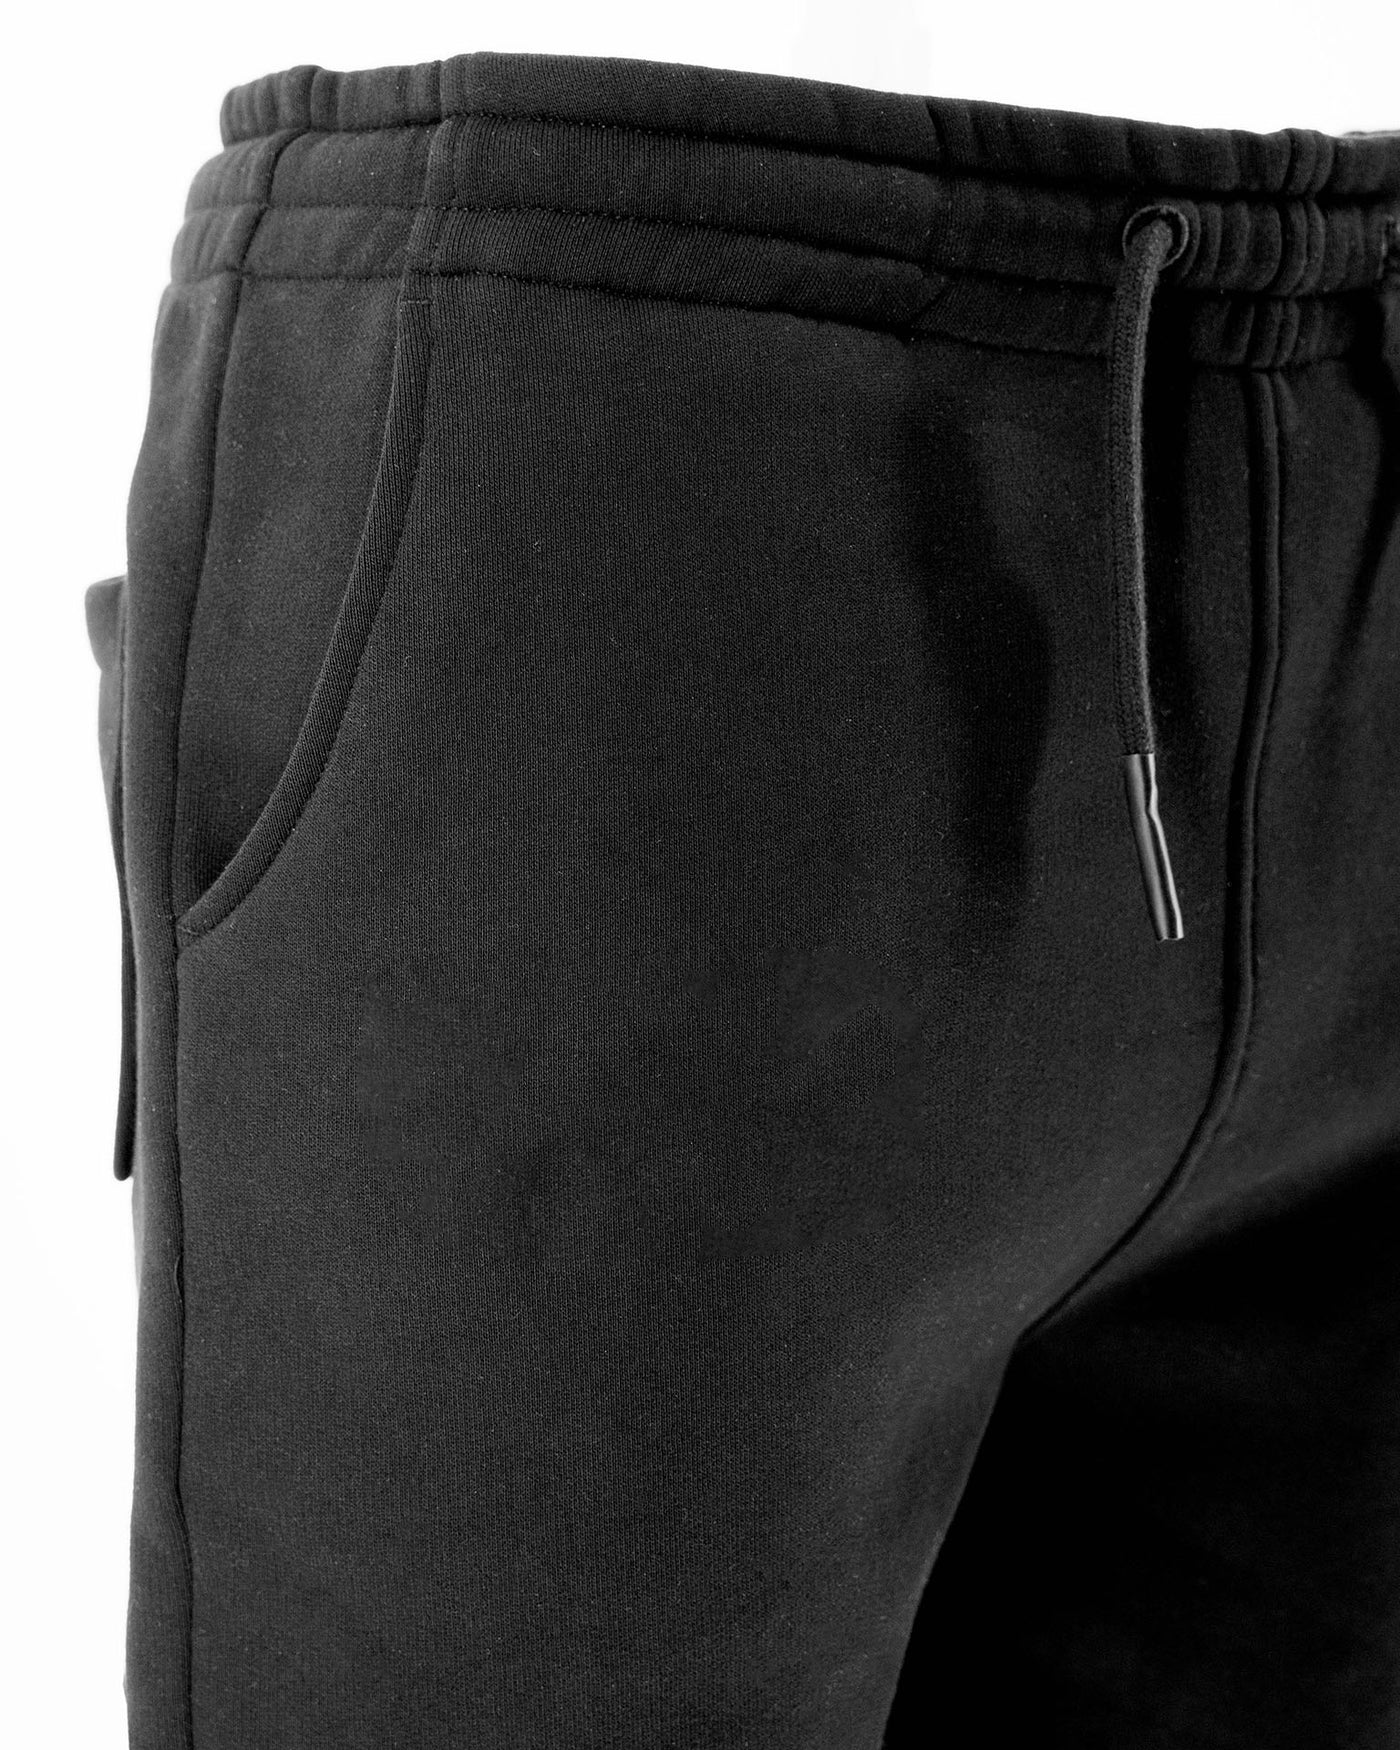 DRKN Heirloom Black Sweatpants